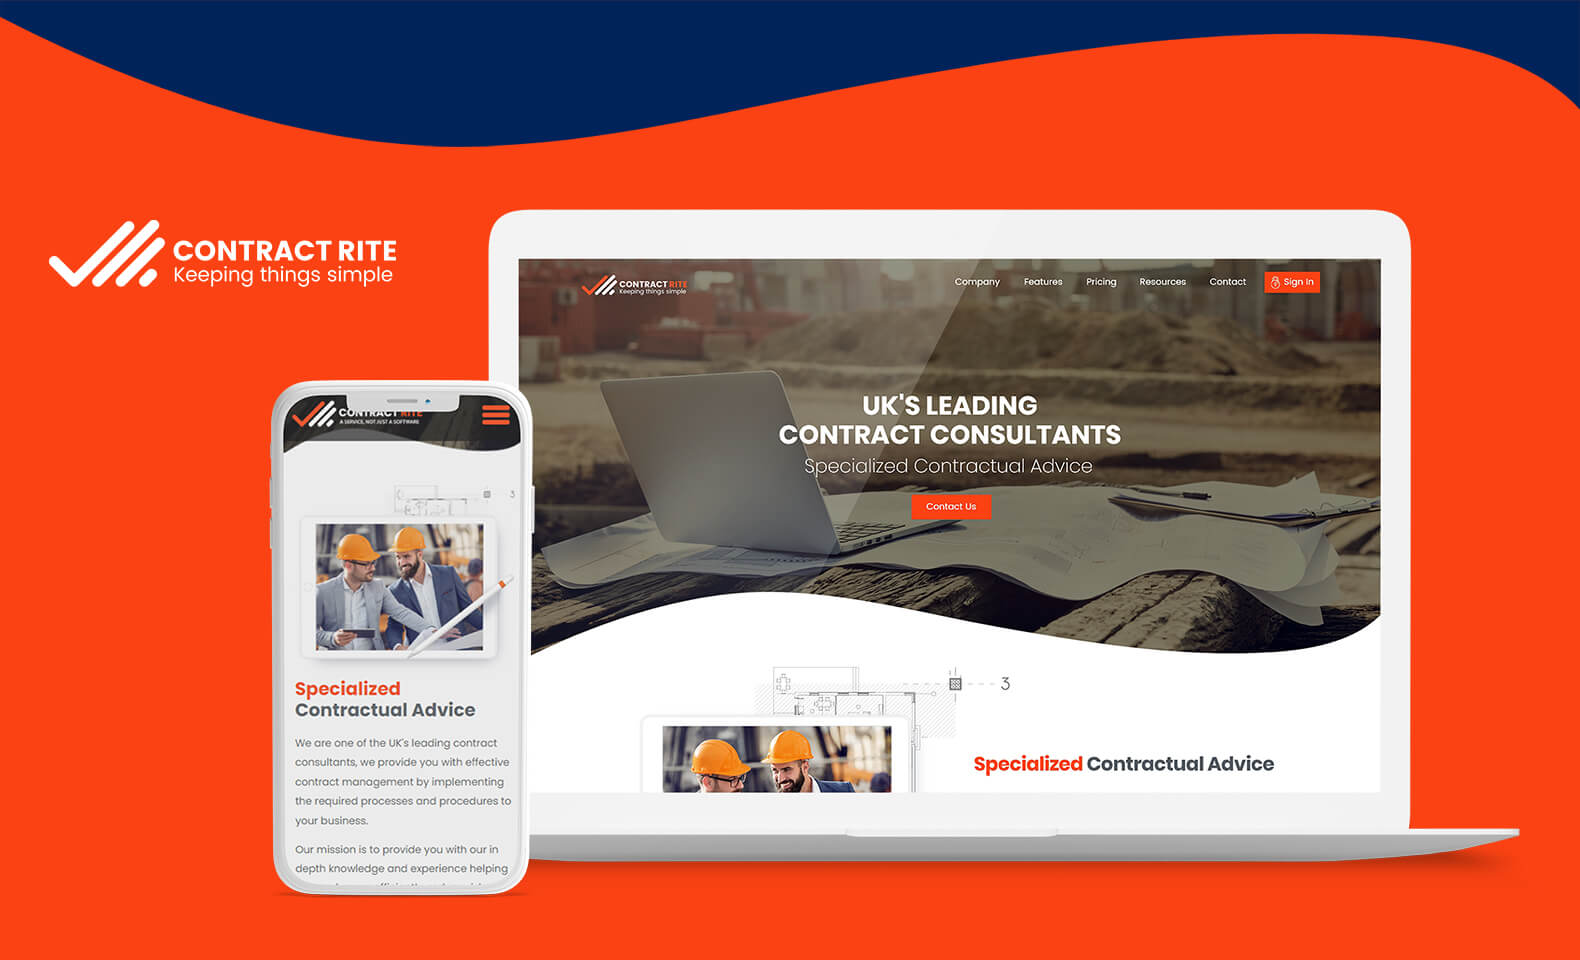 Contract Rite UK Website Design Work Image 1